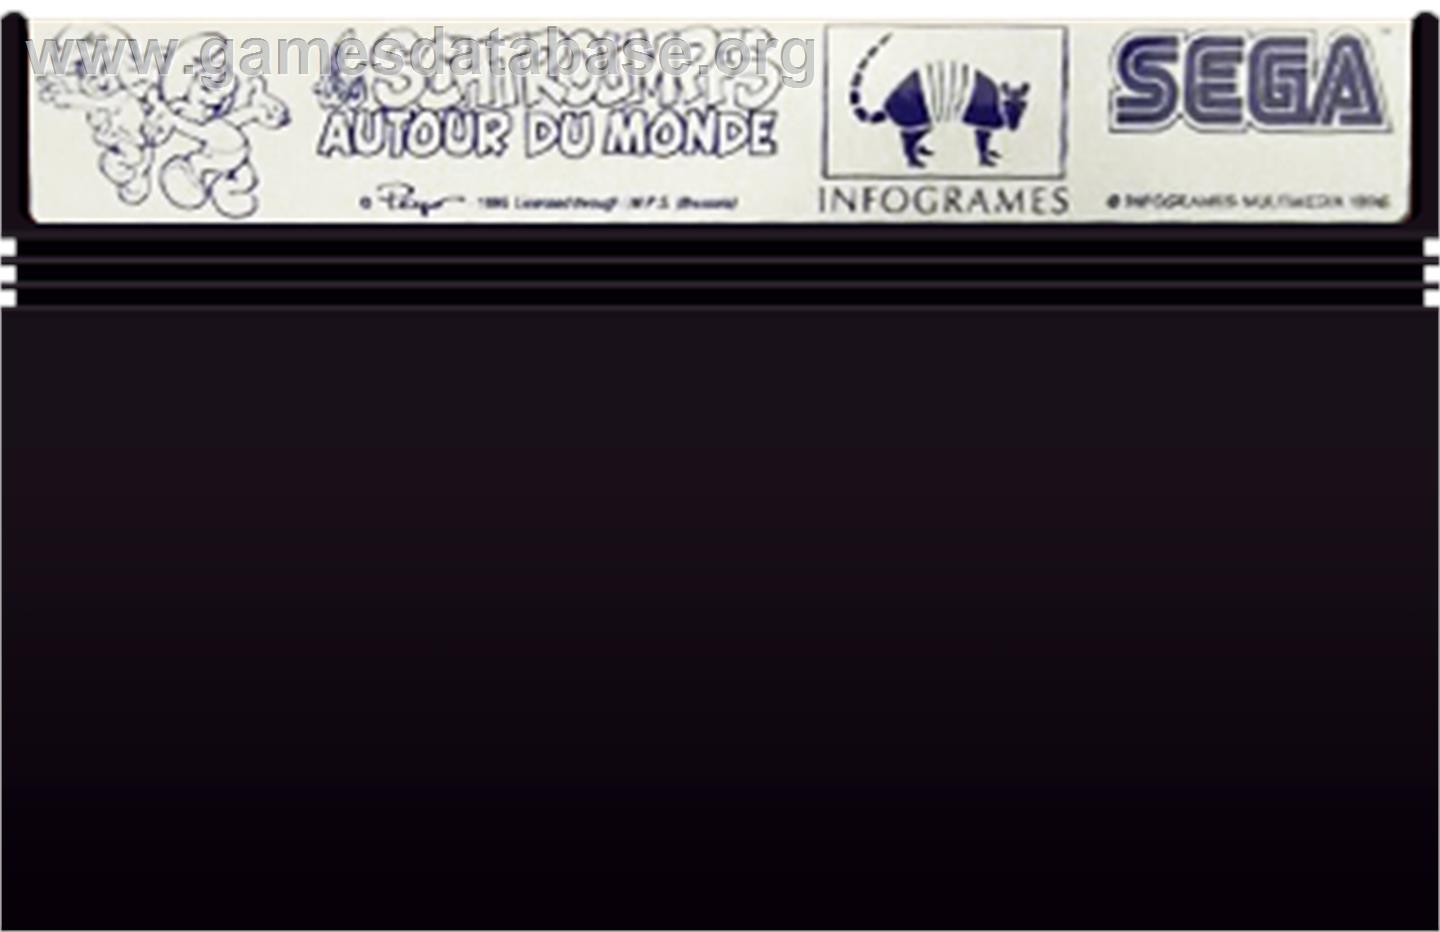 Smurfs Travel the World - Sega Master System - Artwork - Cartridge